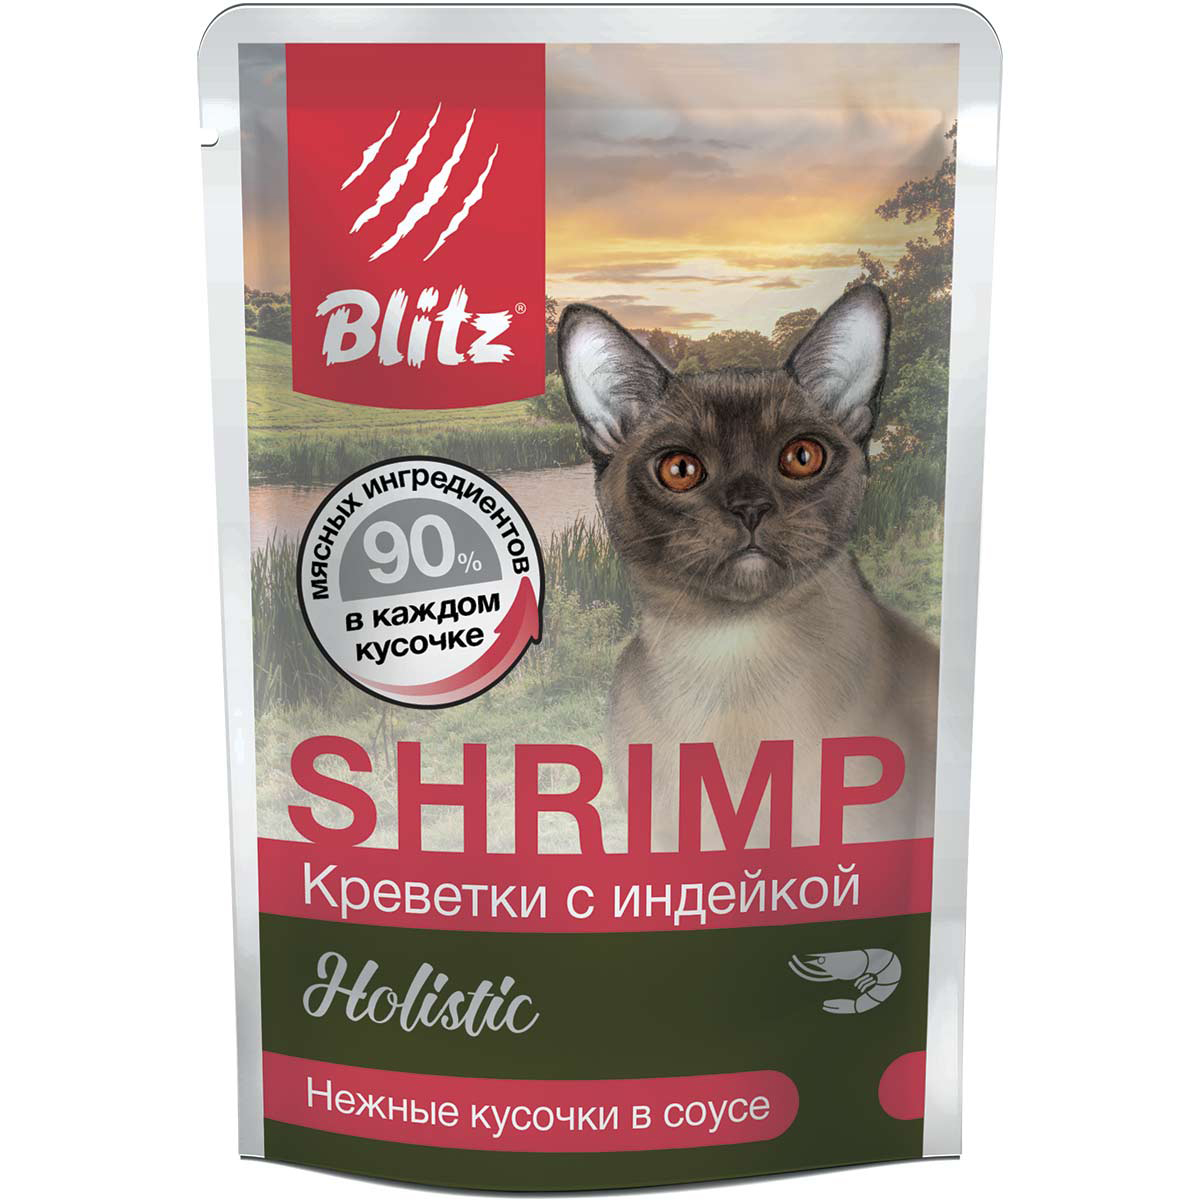 Blitz Holistic для взрослых кошек кусочки креветок с индейкой в соусе 85 г